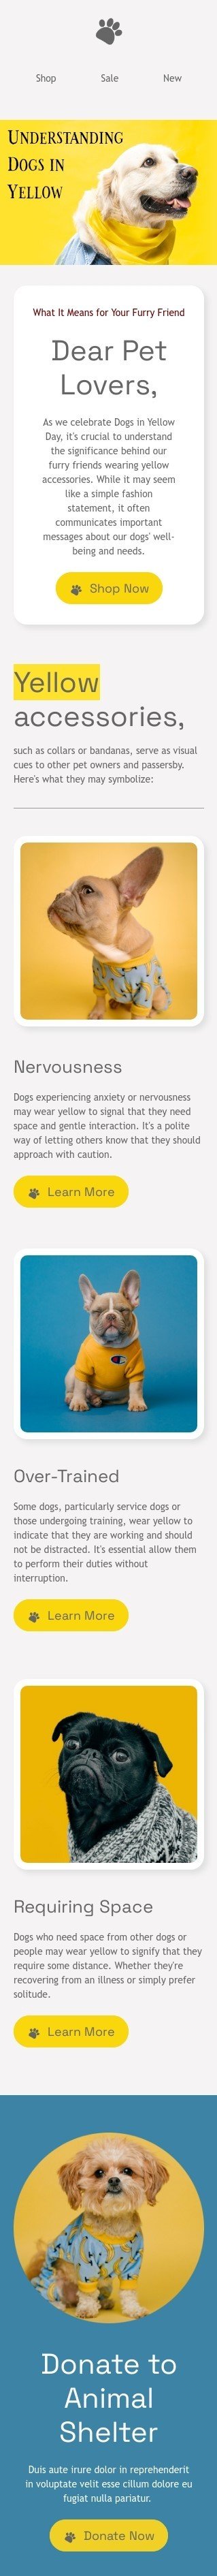 Шаблон листа до свята День собак в жовтому «Розуміння собак у жовтому» для індустрії «Тварини» мобільний вигляд